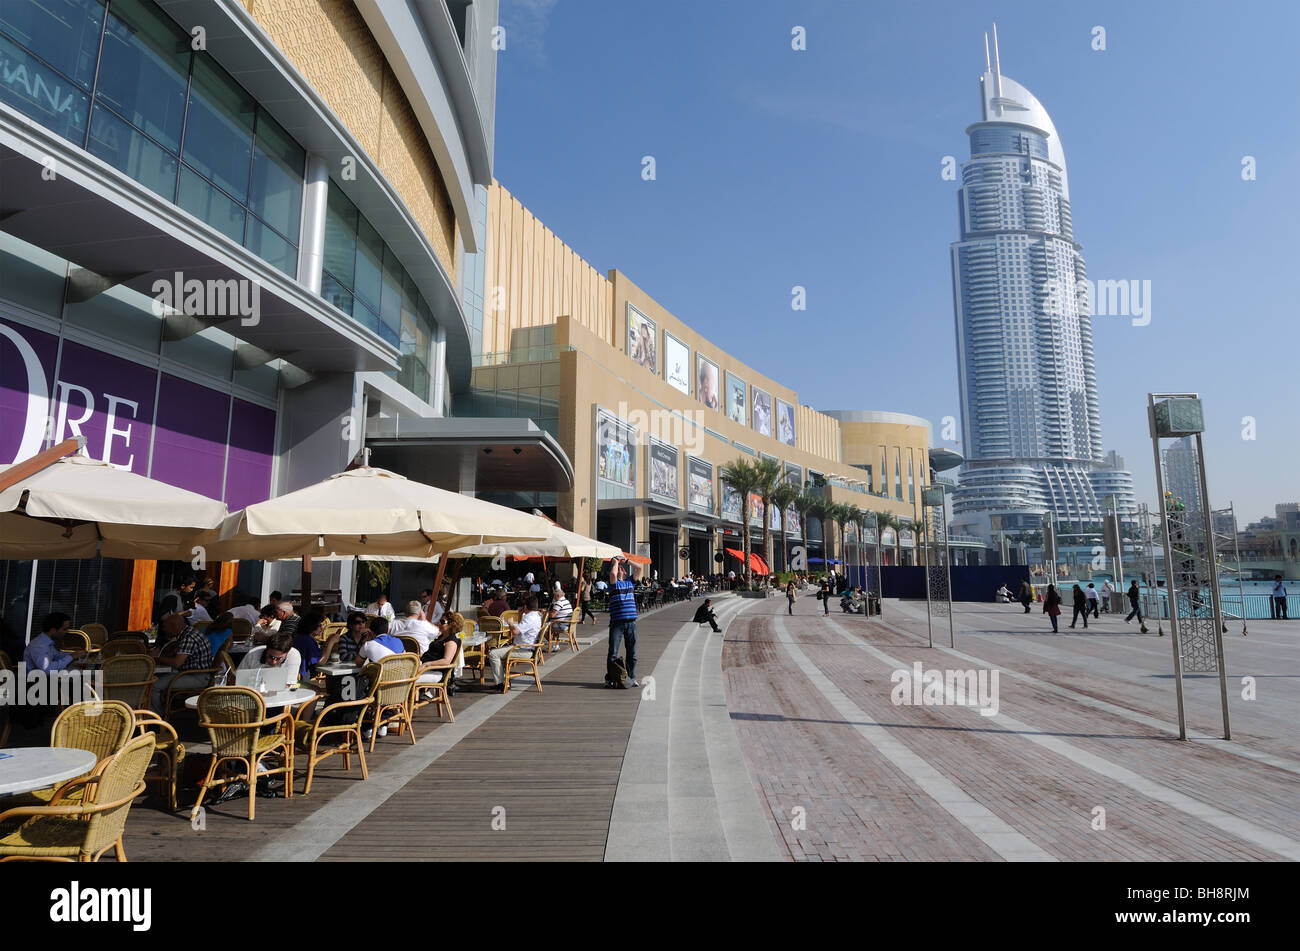 Cafe at the Dubai Mall, Dubai United Arab Emirates Stock Photo